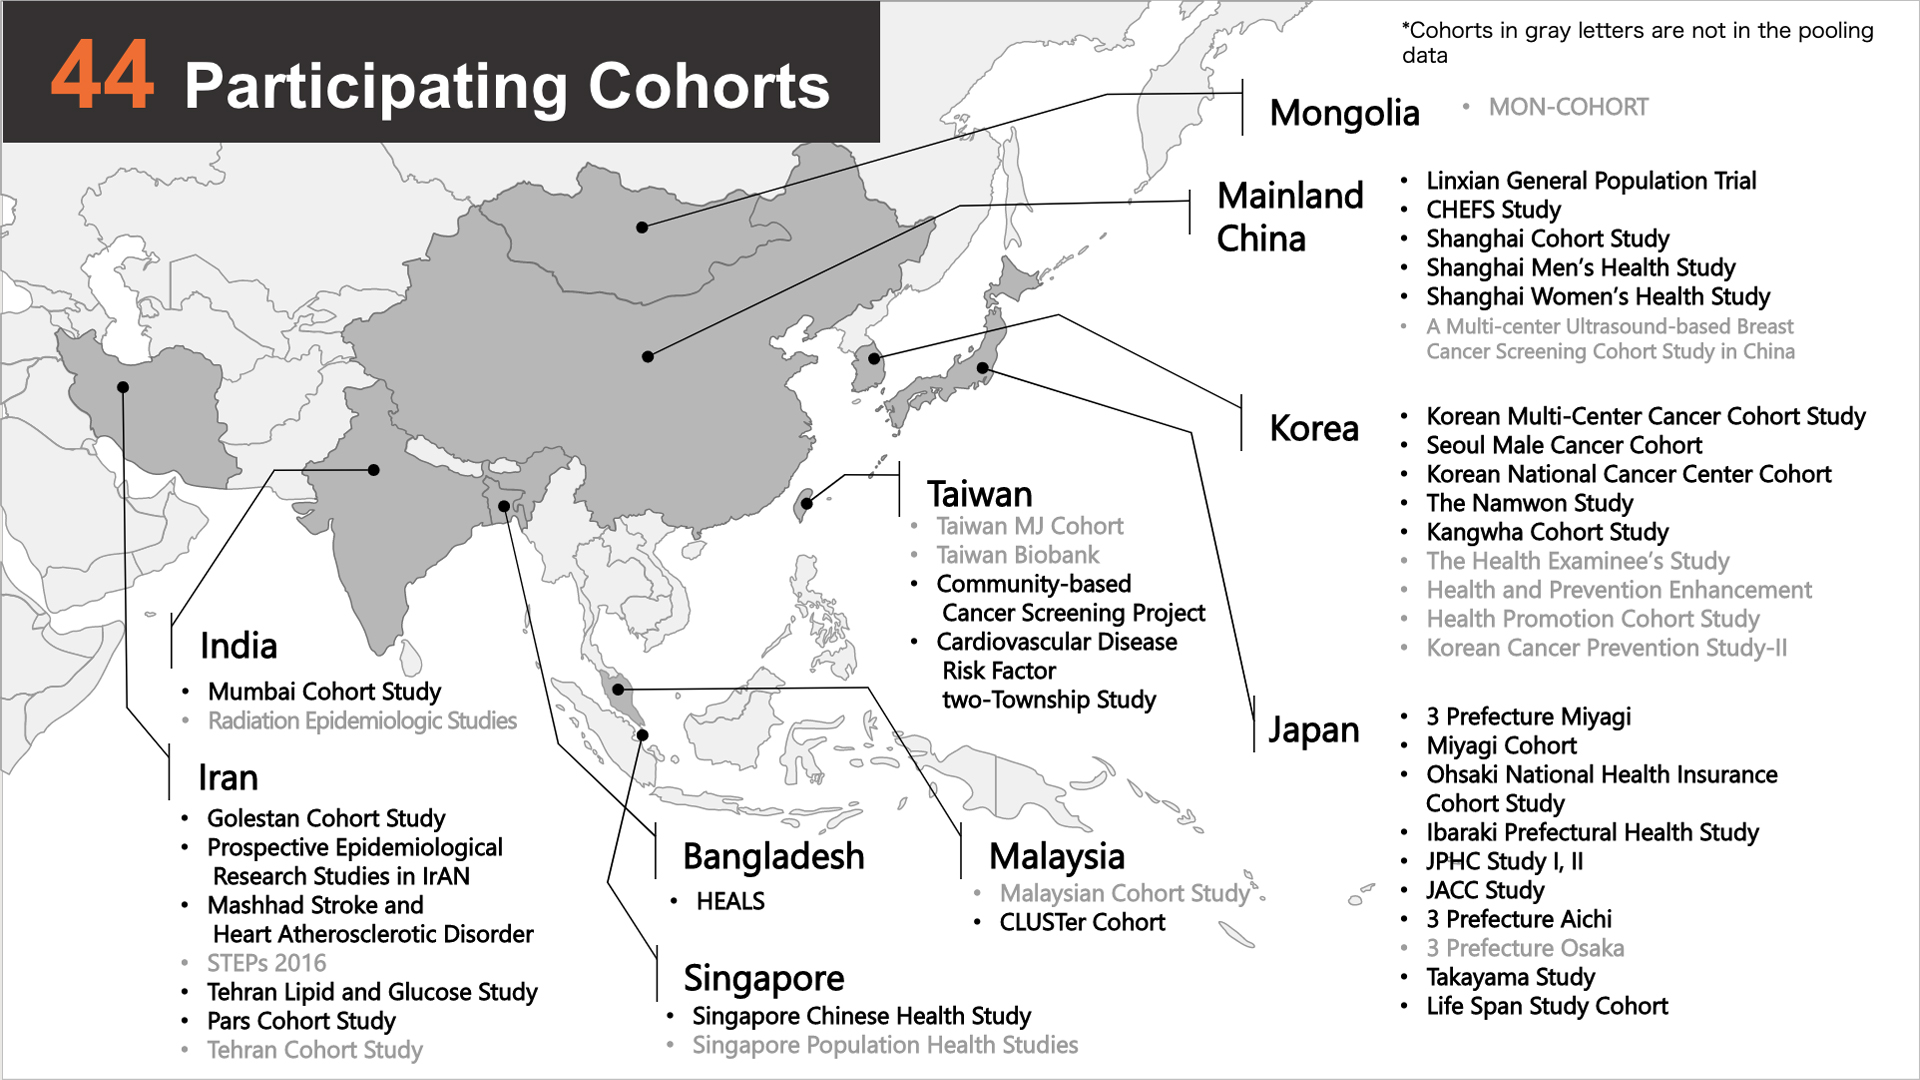 The Asia Cohort Consortium